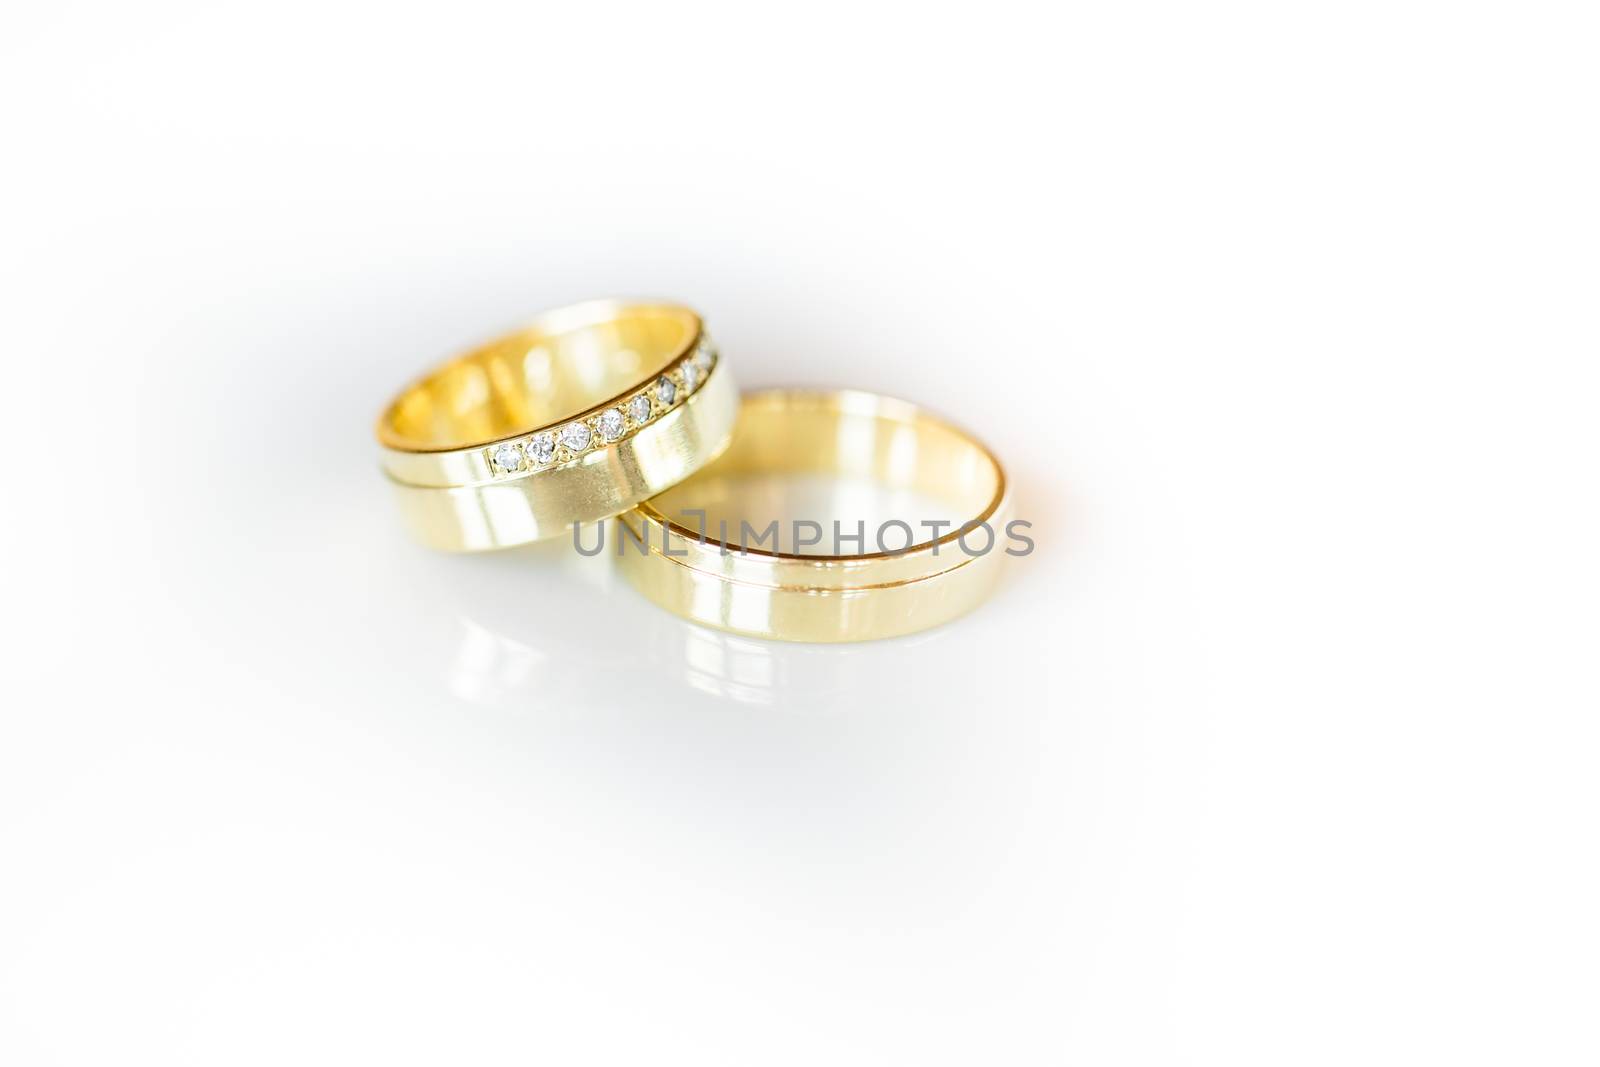 Wedding day details - two lovely golden wedding rings by viktor_cap